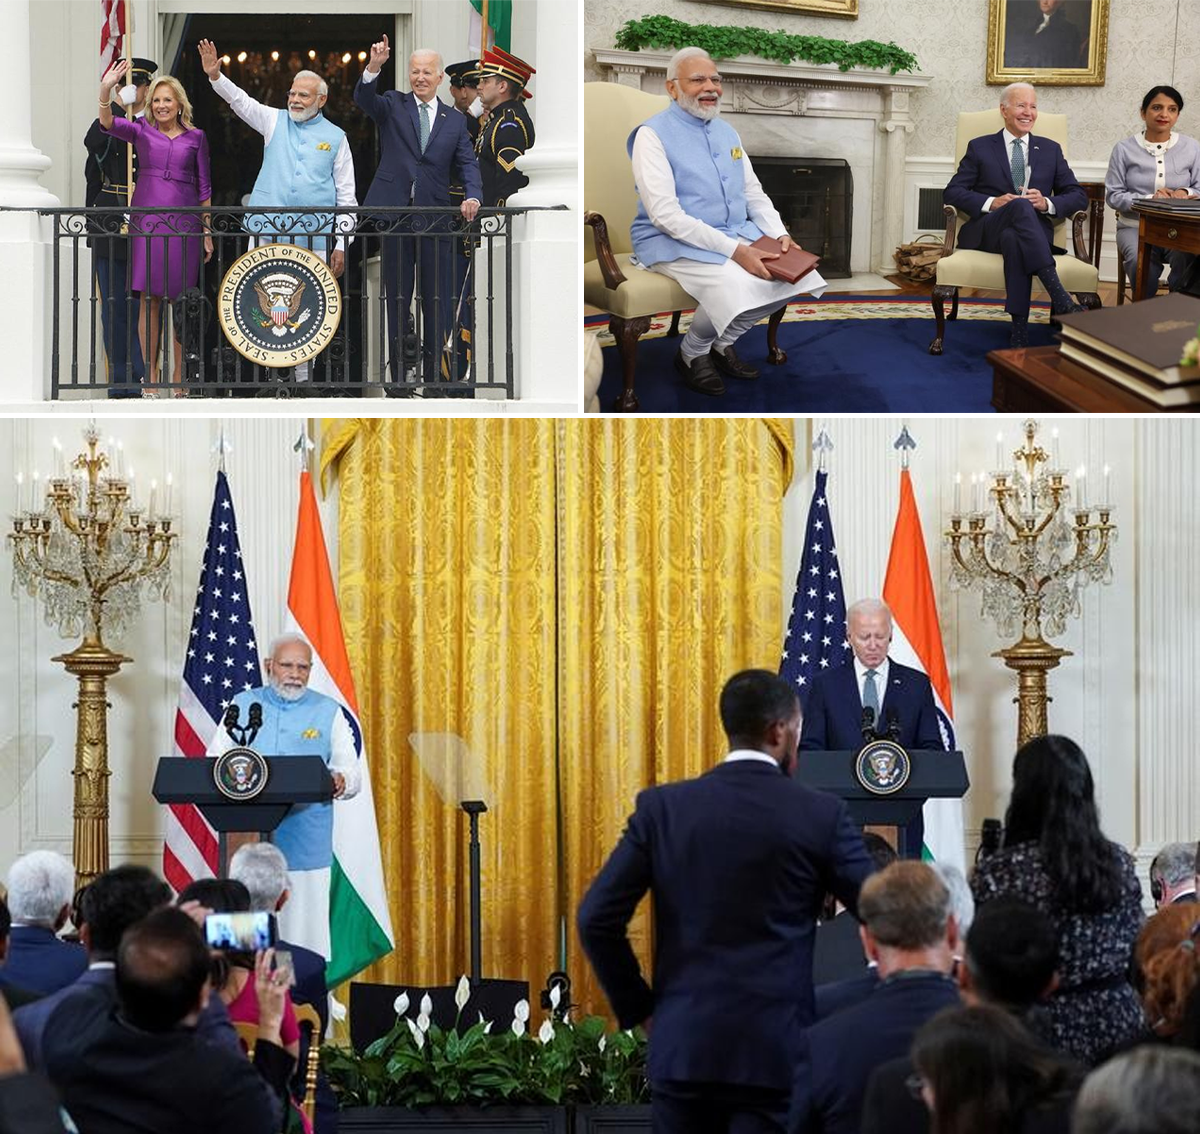 Tổng thống Joe Biden tổ chức lễ đón và hội đàm với Thủ tướng Ấn Độ Modi về hàng loạt vấn đề song phương Mỹ - Ấn Độ, khu vực và toàn cầu. Ảnh: Reuters